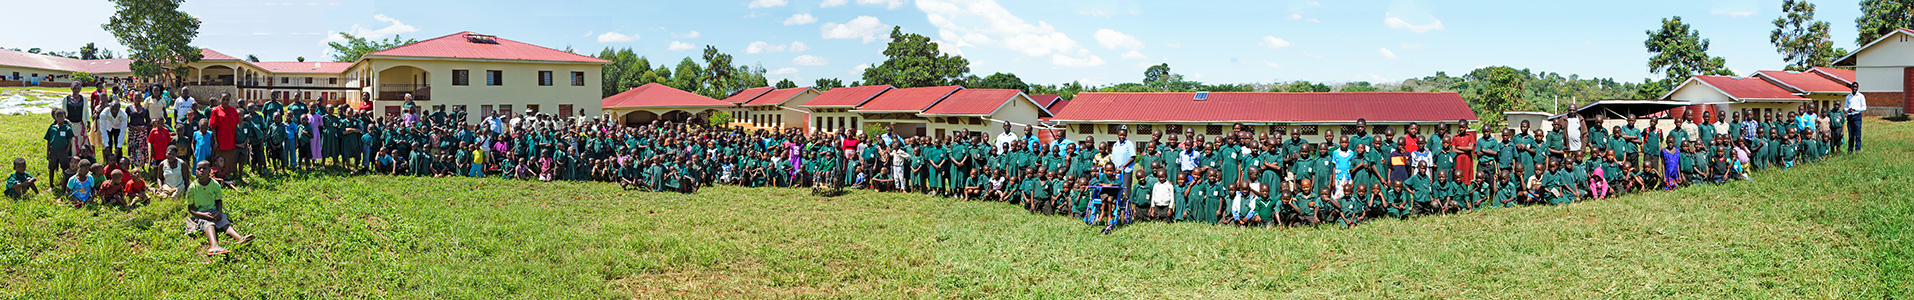 Wir bauen unsere Schulen ganz bewusst im ländlichen Raum, in den ärmsten Regionen Ugandas, wo es kaum Zugang zu Bildungsmöglichkeiten für die Bevölkerung gibt.